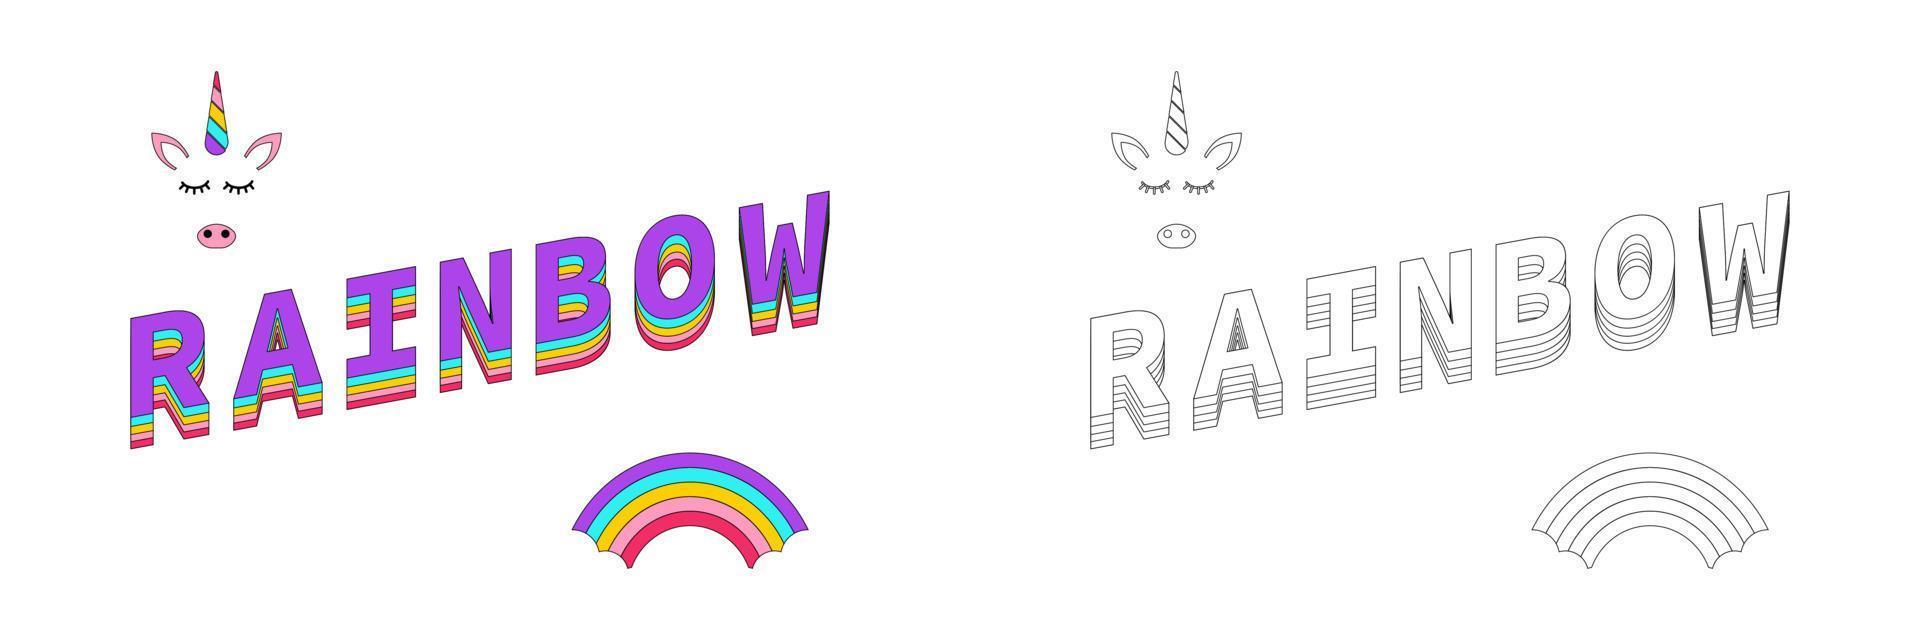 Regenbogenfärbung. Regenbogenfarbe mit Einhorn und Textregenbogen. Linien-Design. Folge10 vektor